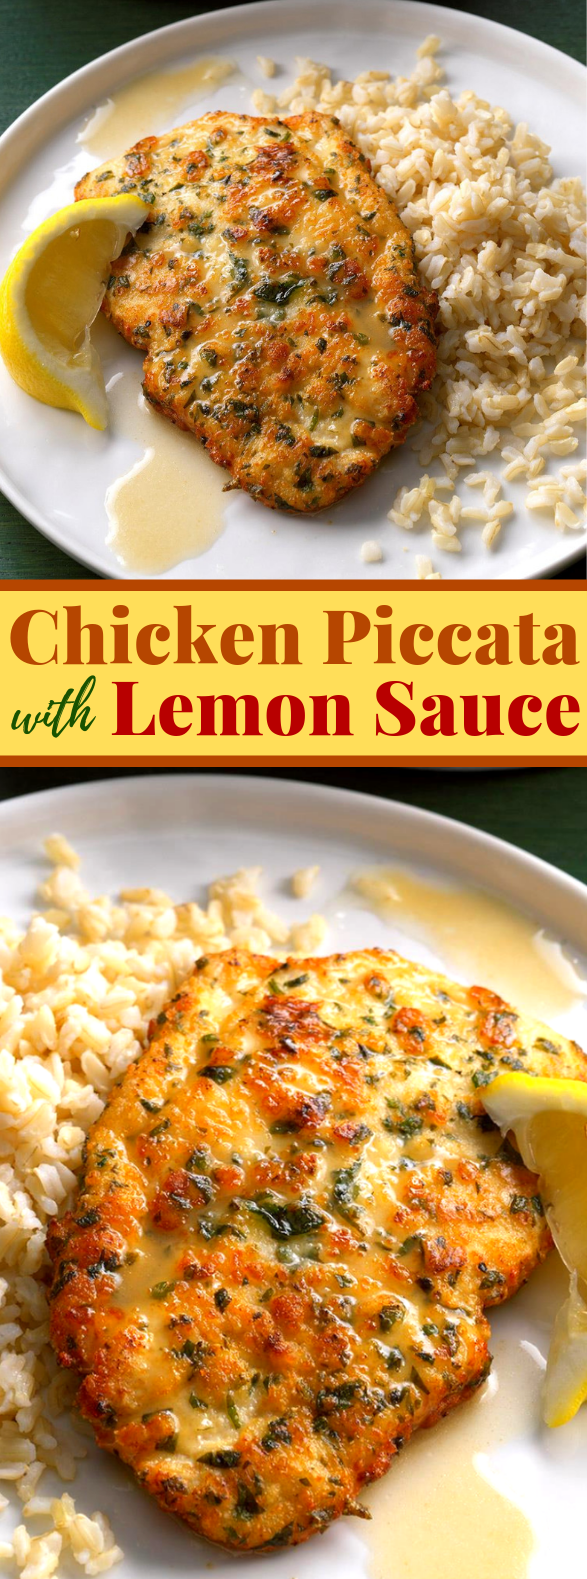 Chicken Piccata with Lemon Sauce #dinner #chickenrecipe